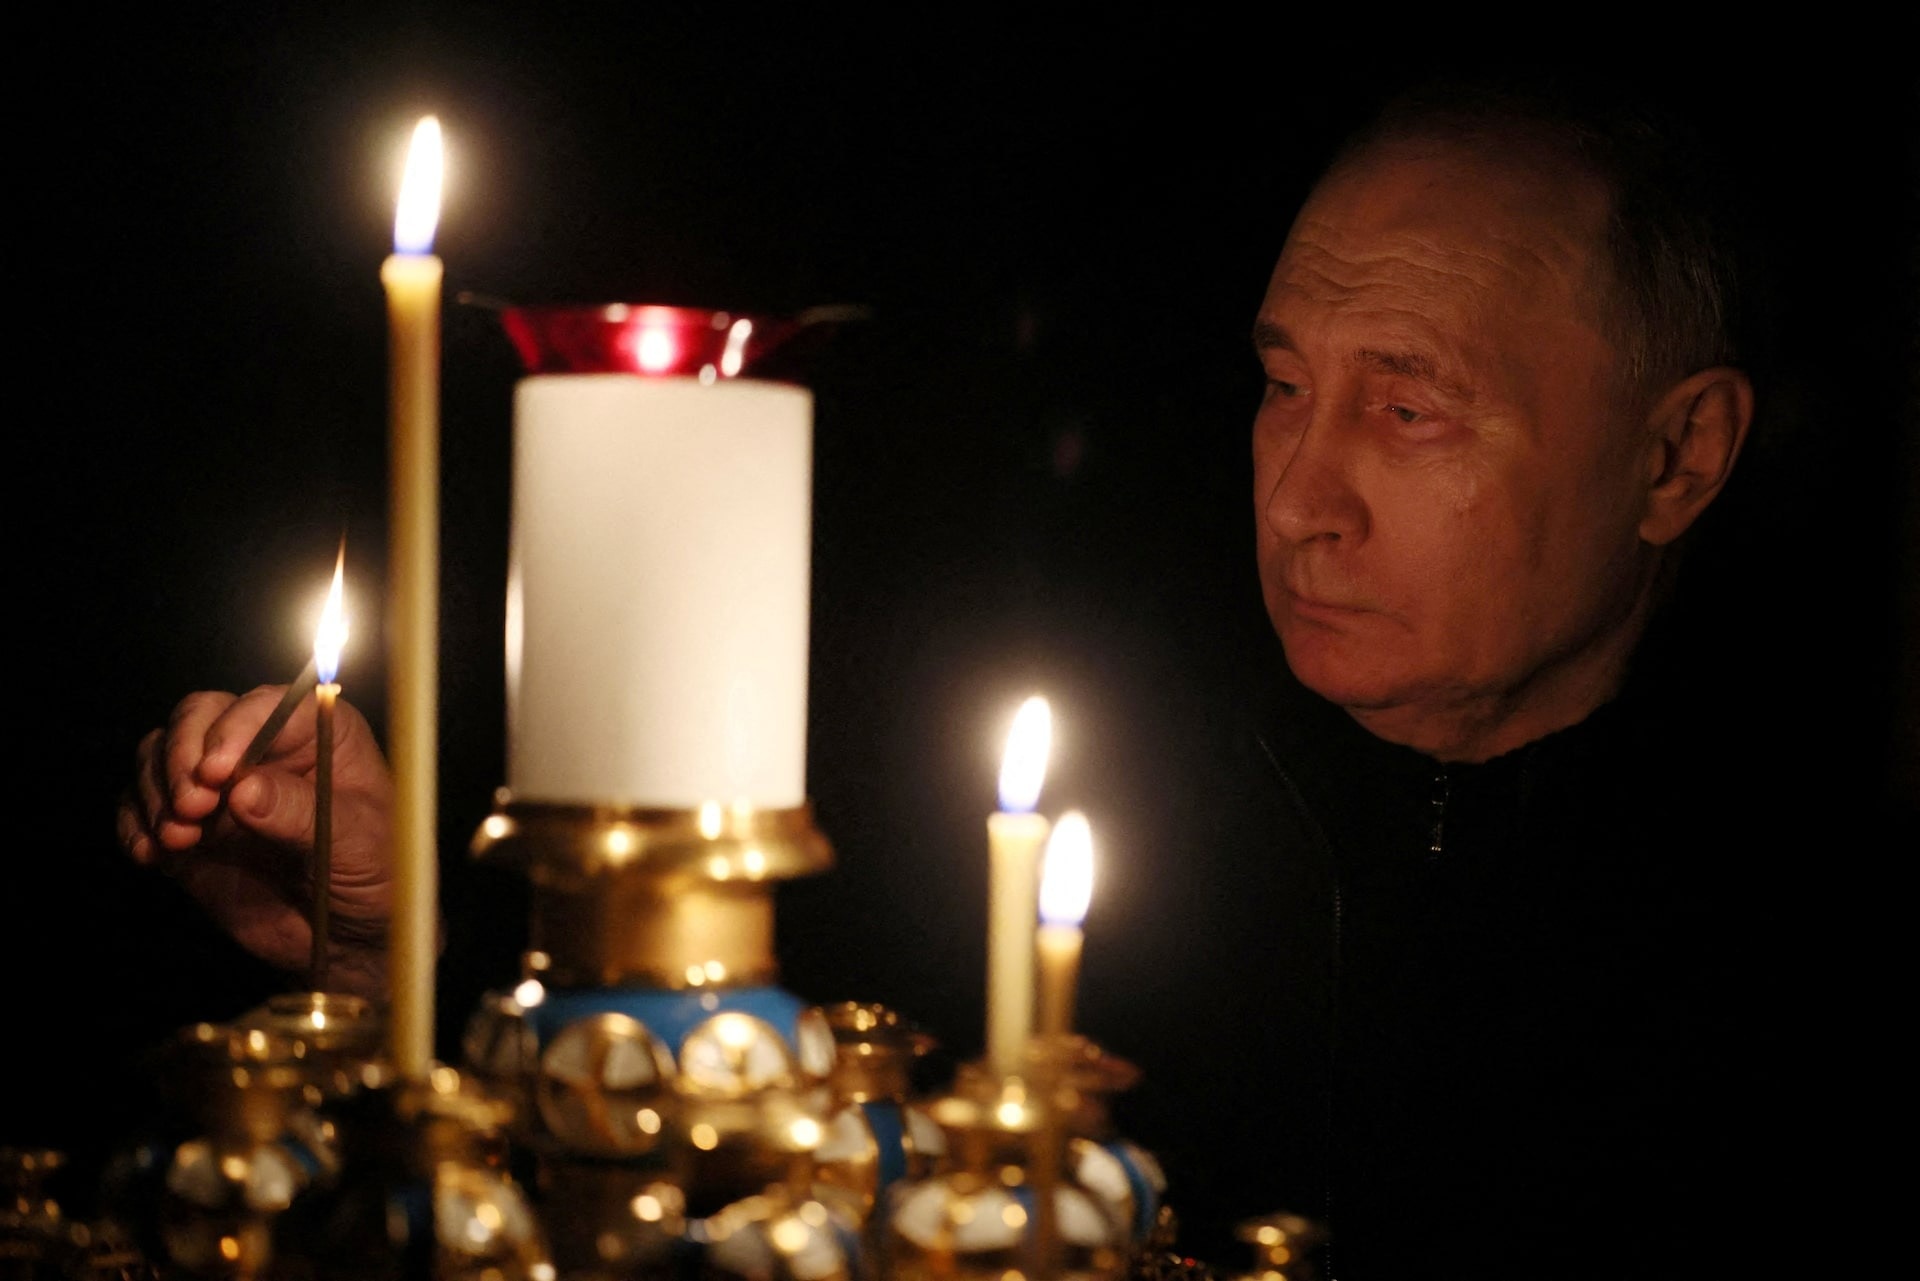 Ảnh thế giới 7 ngày qua: Tổng thống Putin thắp nến tưởng nhớ nạn nhân thiệt mạng sau vụ khủng bố- Ảnh 1.